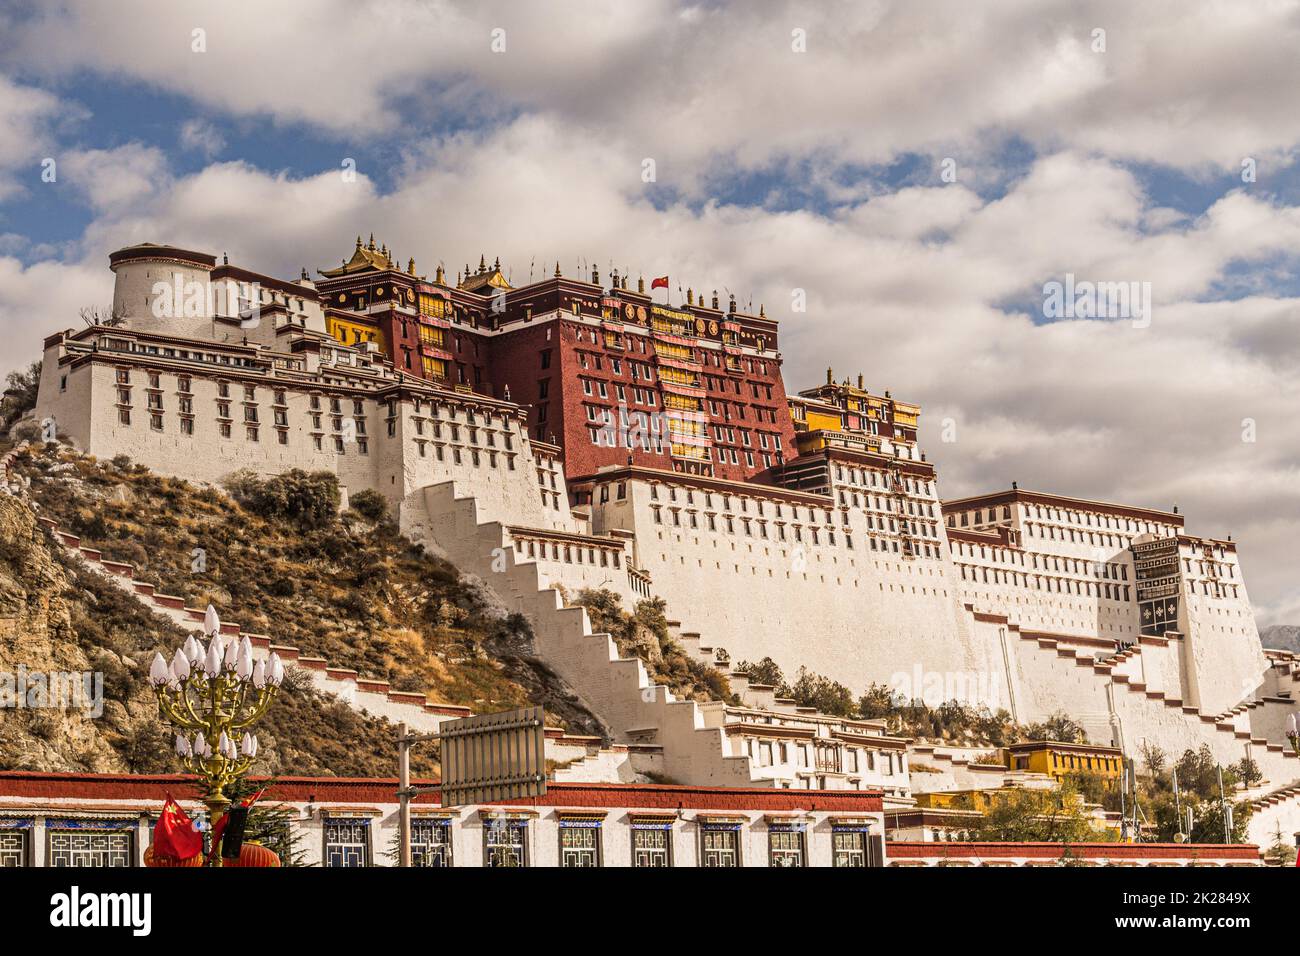 Der Potala-Palast in Lhasa, Tibet, war die Hauptresidenz des aktuellen Dalai Lama, bis seine Heiligkeit während des tibetischen Aufstands von 1959 nach Indien floh Stockfoto